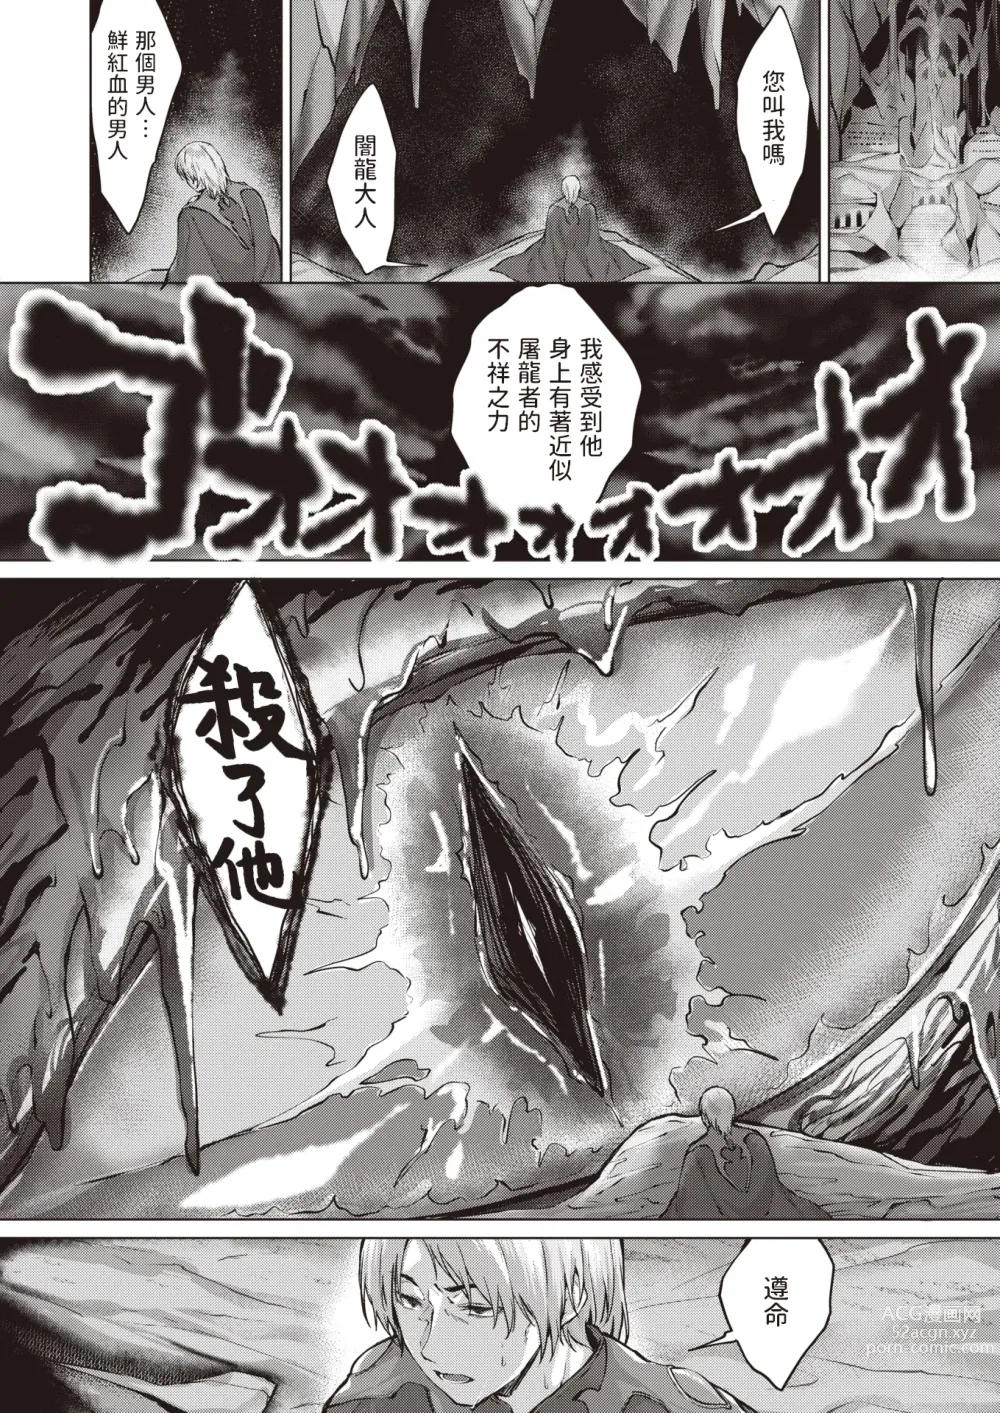 Page 89 of doujinshi Drache freund Ryuu no Tomo